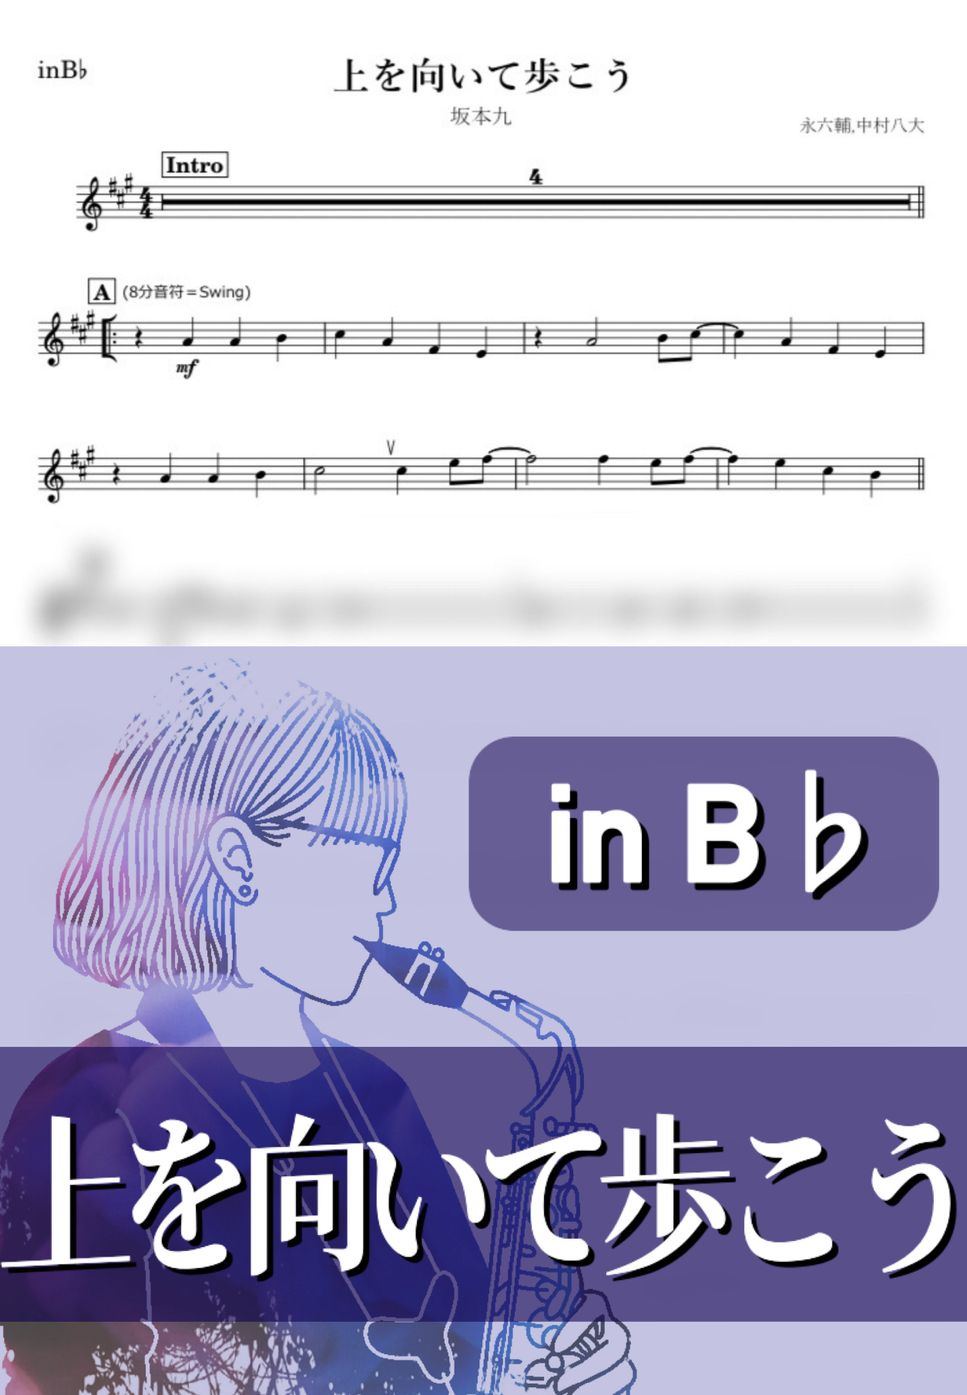 坂本九 - 上を向いて歩こう (B♭) by kanamusic